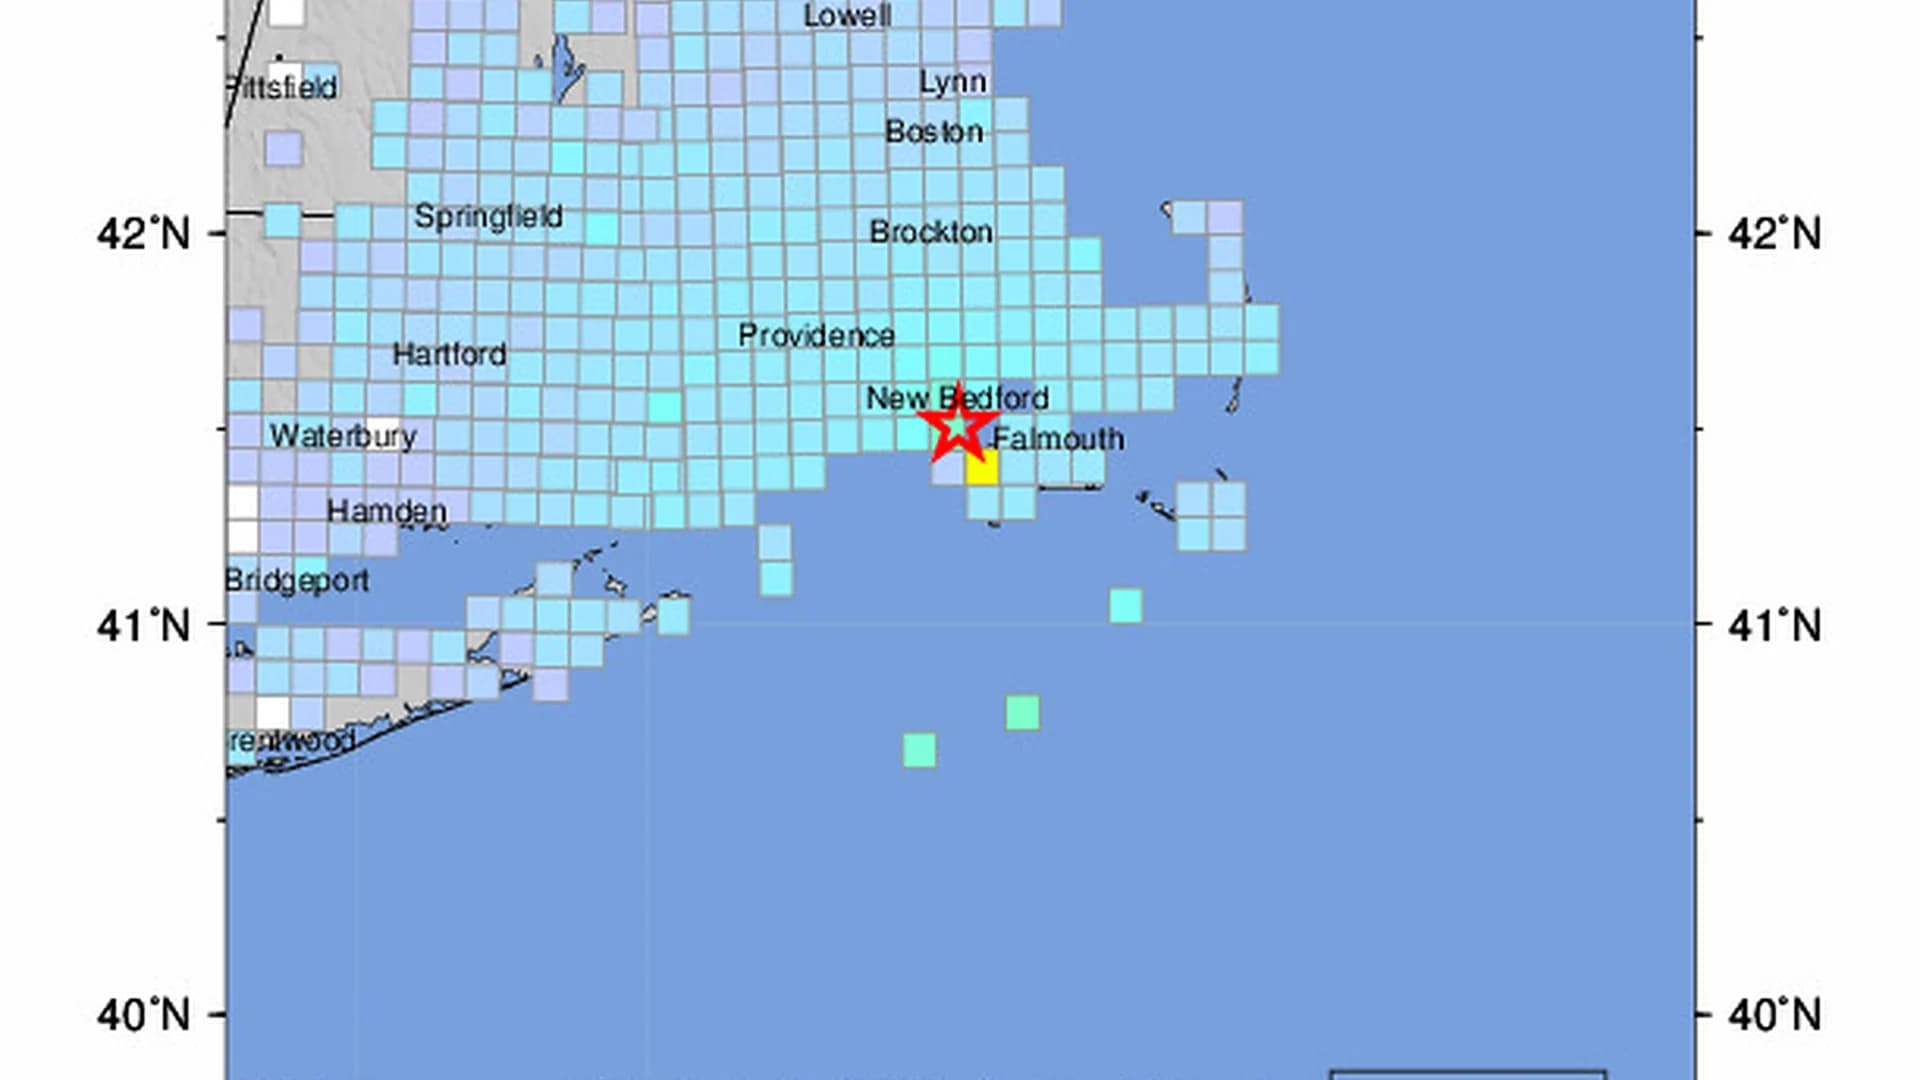 USGS: Magnitude 3.6 earthquake recorded off Massachusetts coast